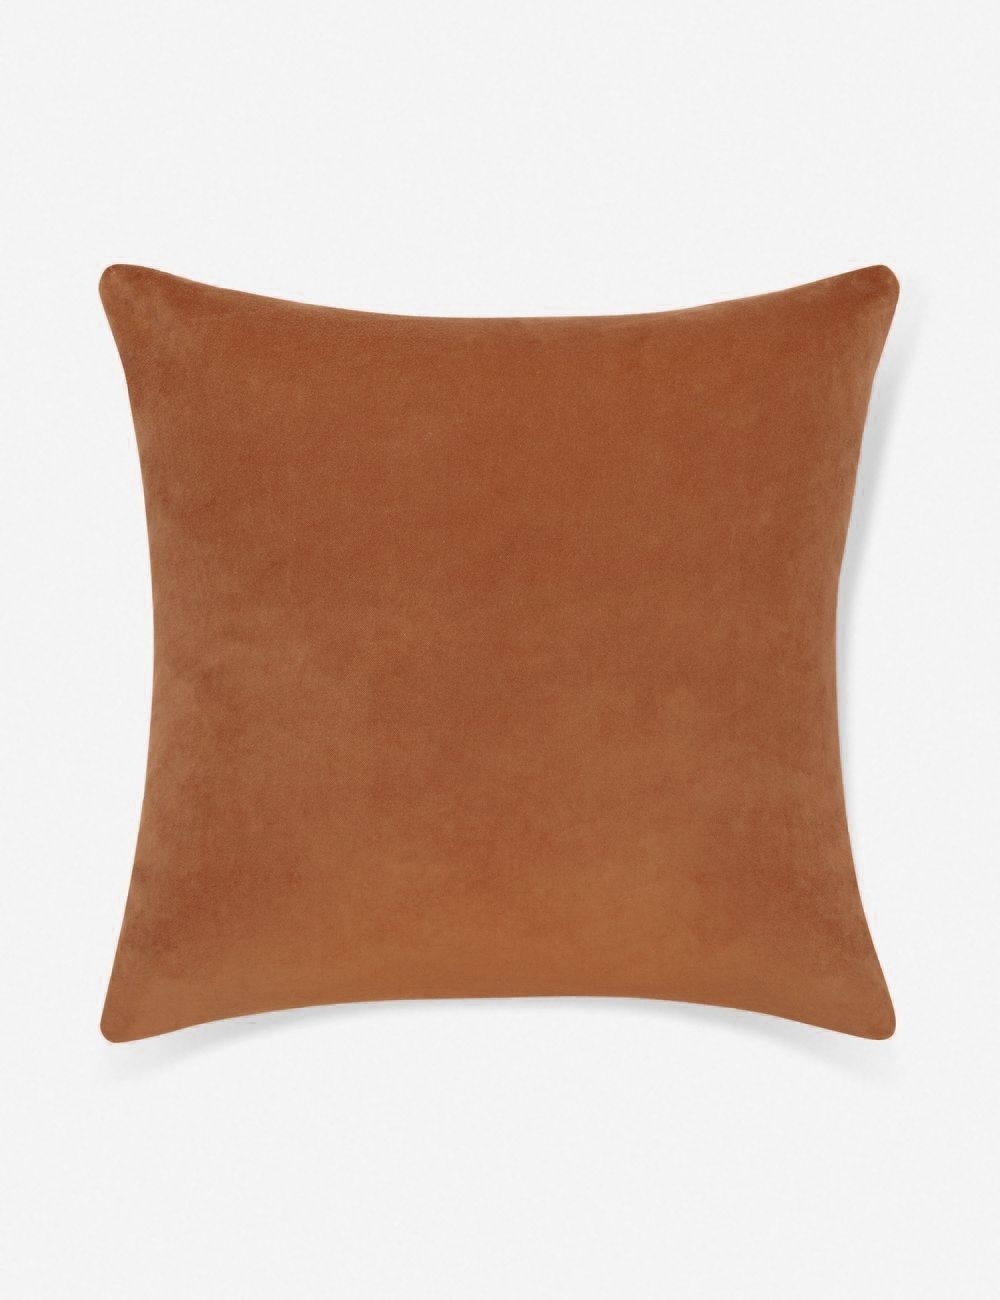 Charlotte Velvet Pillow, Burnt Orange, 20" x 20" - Image 0